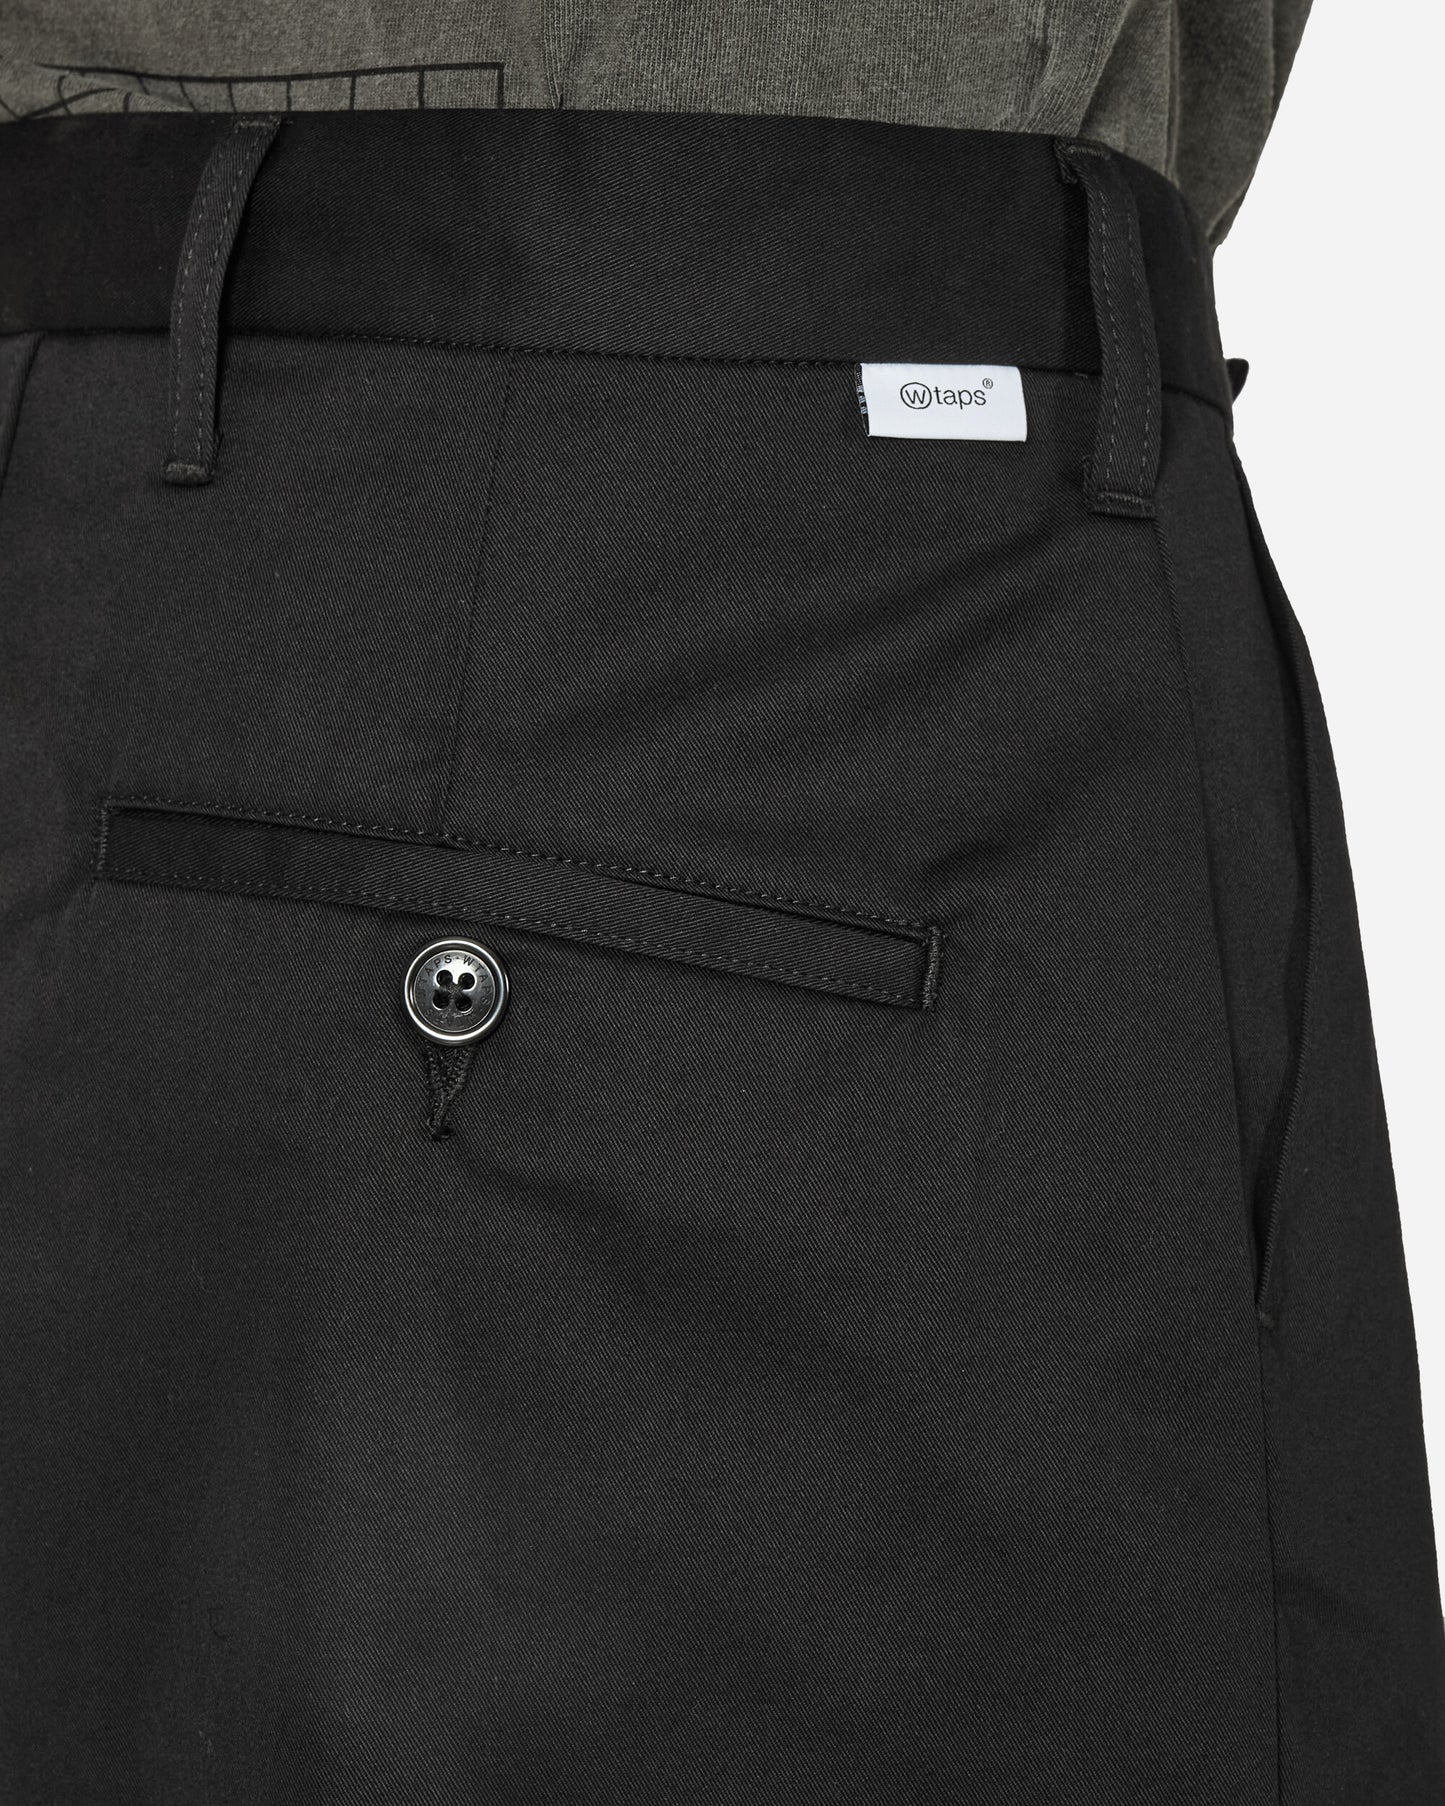 WTAPS Underwear Black Shorts Short 241TQDT-PTM04 BLK